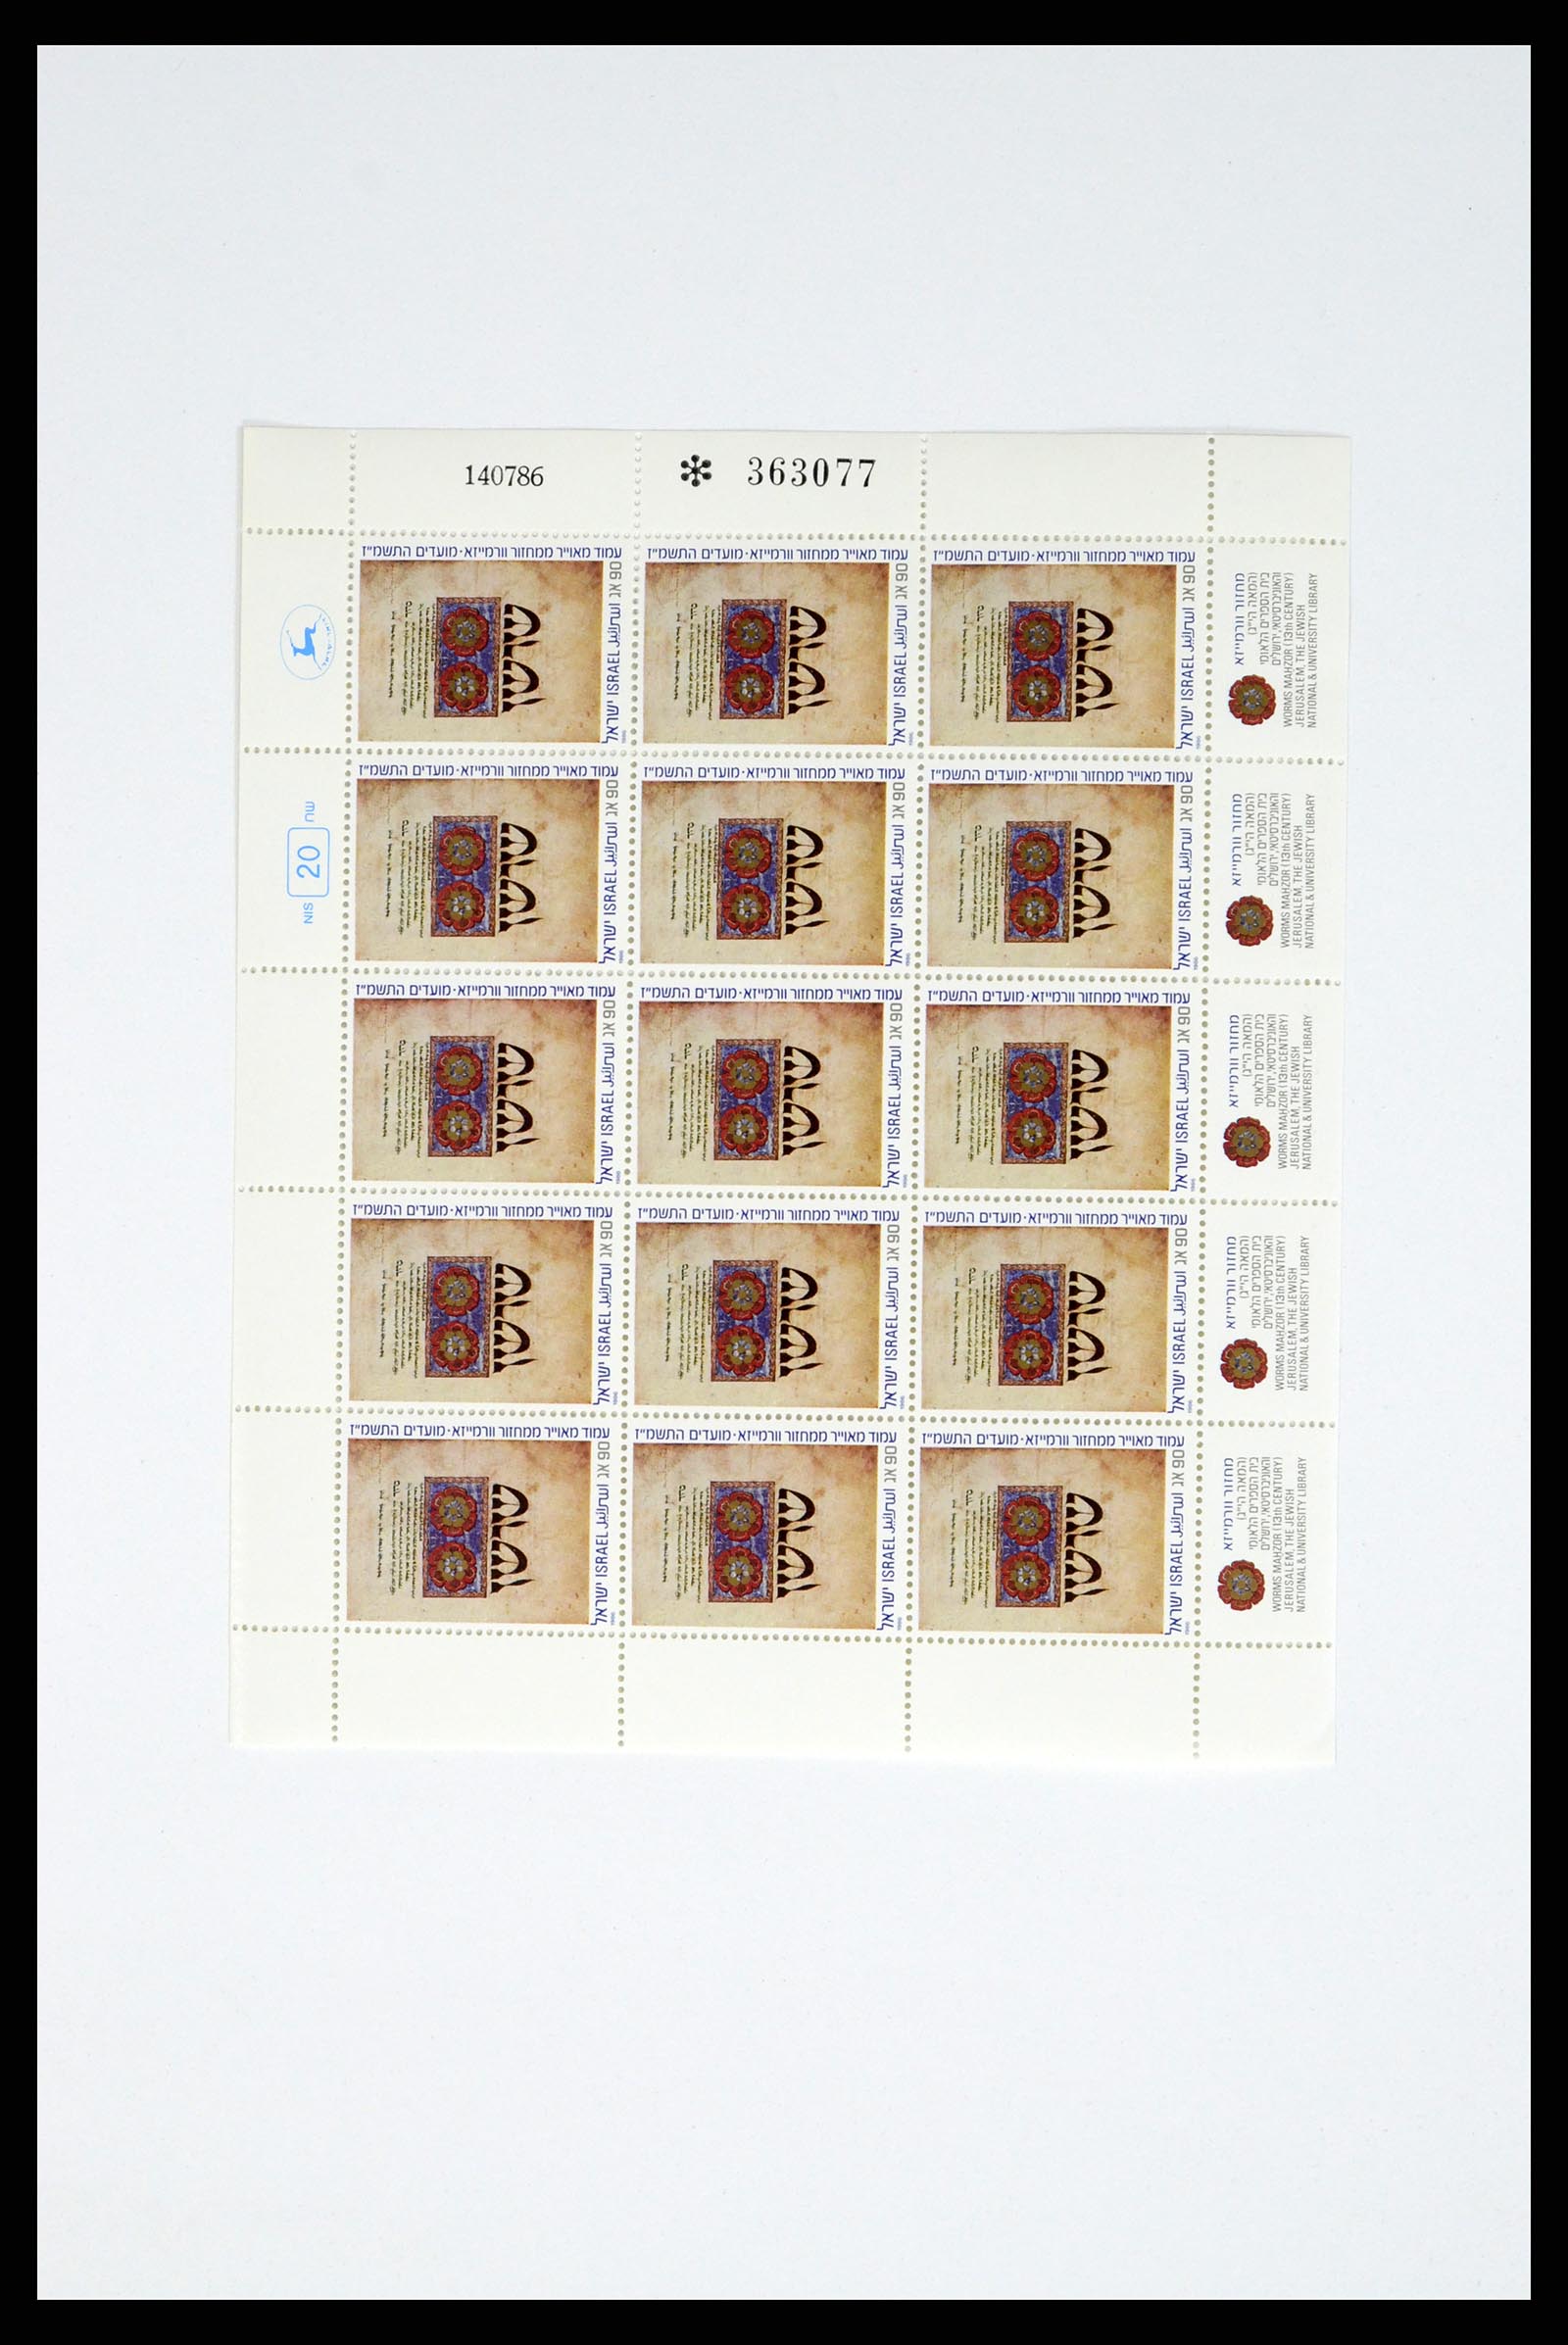 37779 117 - Postzegelverzameling 37779 Israël velletjes 1986-2009.